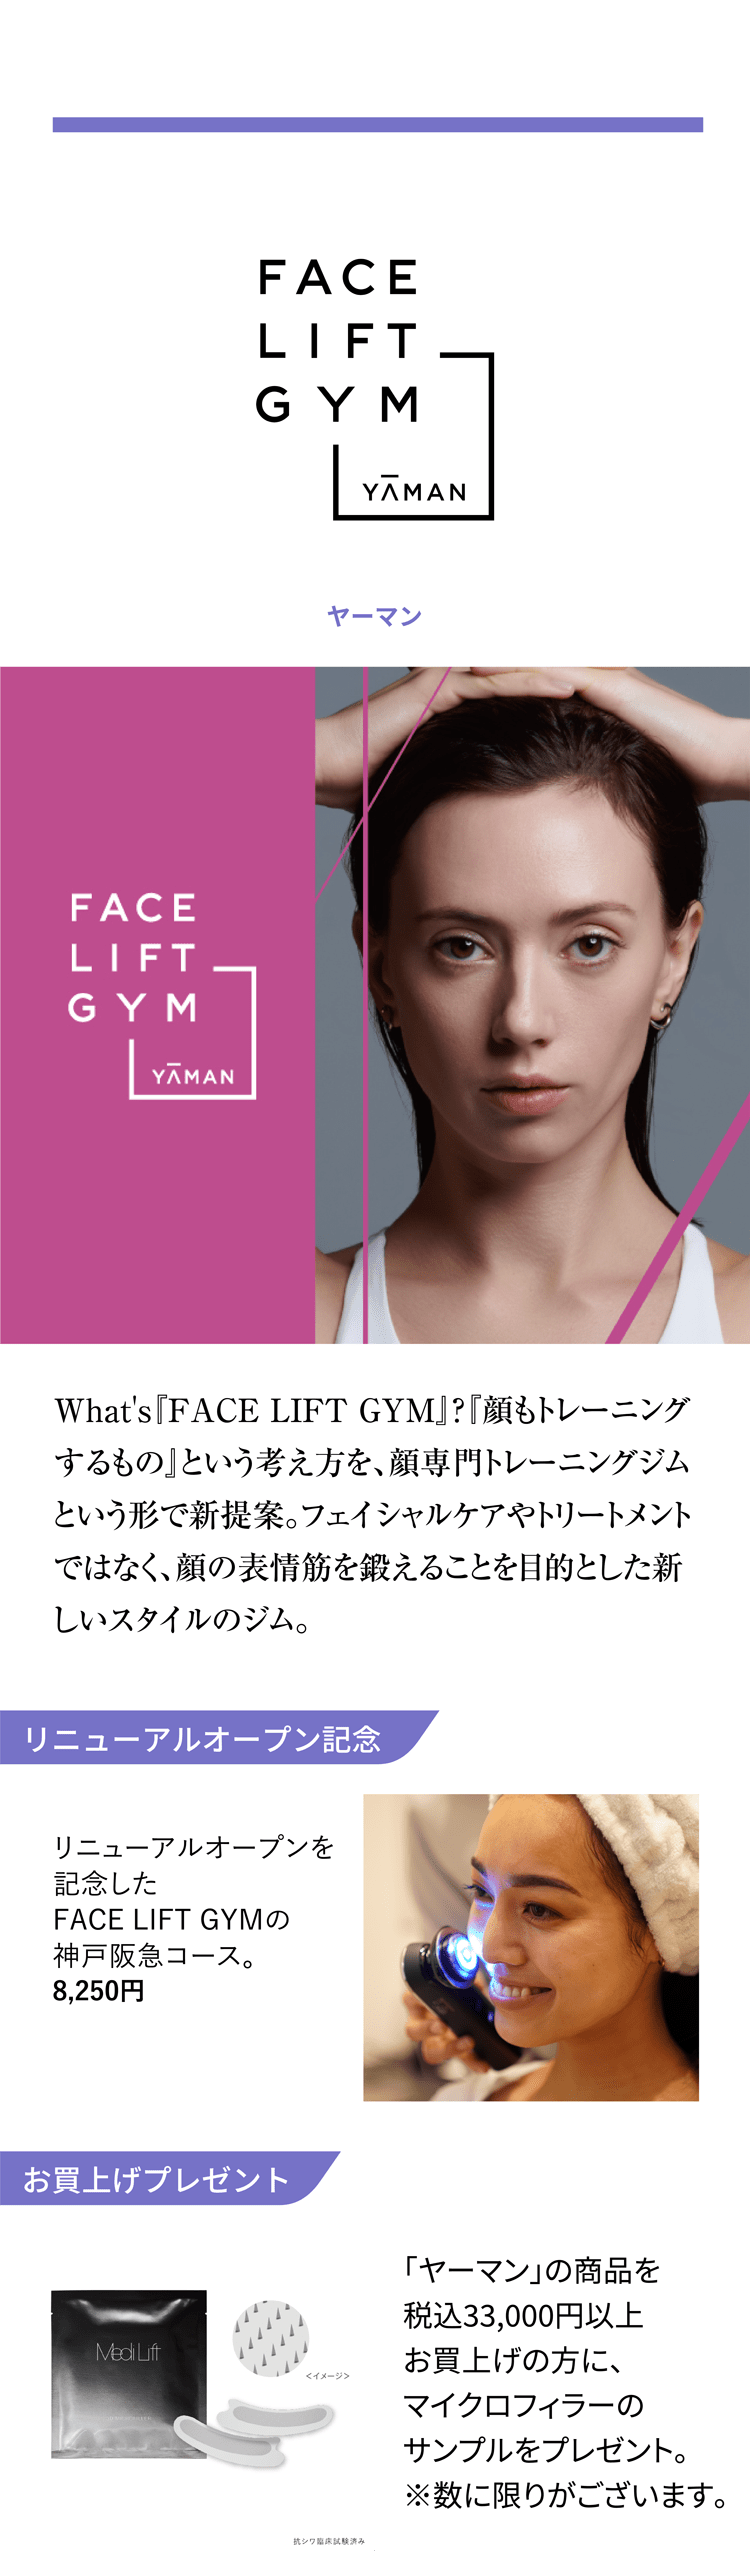 FACE LIFT GYM YAMAN What's『FACE LIFT GYM』?『顔もトレーニングするもの』という考え方を、顔専門トレーニングジムという形で新提案。フェイシャルケアやトリートメントではなく、顔の表情筋を鍛えることを目的とした新しいスタイルのジム。 リニューアルオープン記念 リニューアルオープンを記念したFACE LIFT GYMの神戸阪急コース。8,250円 お買上げプレゼント 「ヤーマン」の商品を税込33,000円以上お買上げの方に、マイクロフィラーのサンプルをプレゼント。※数に限りがございます。